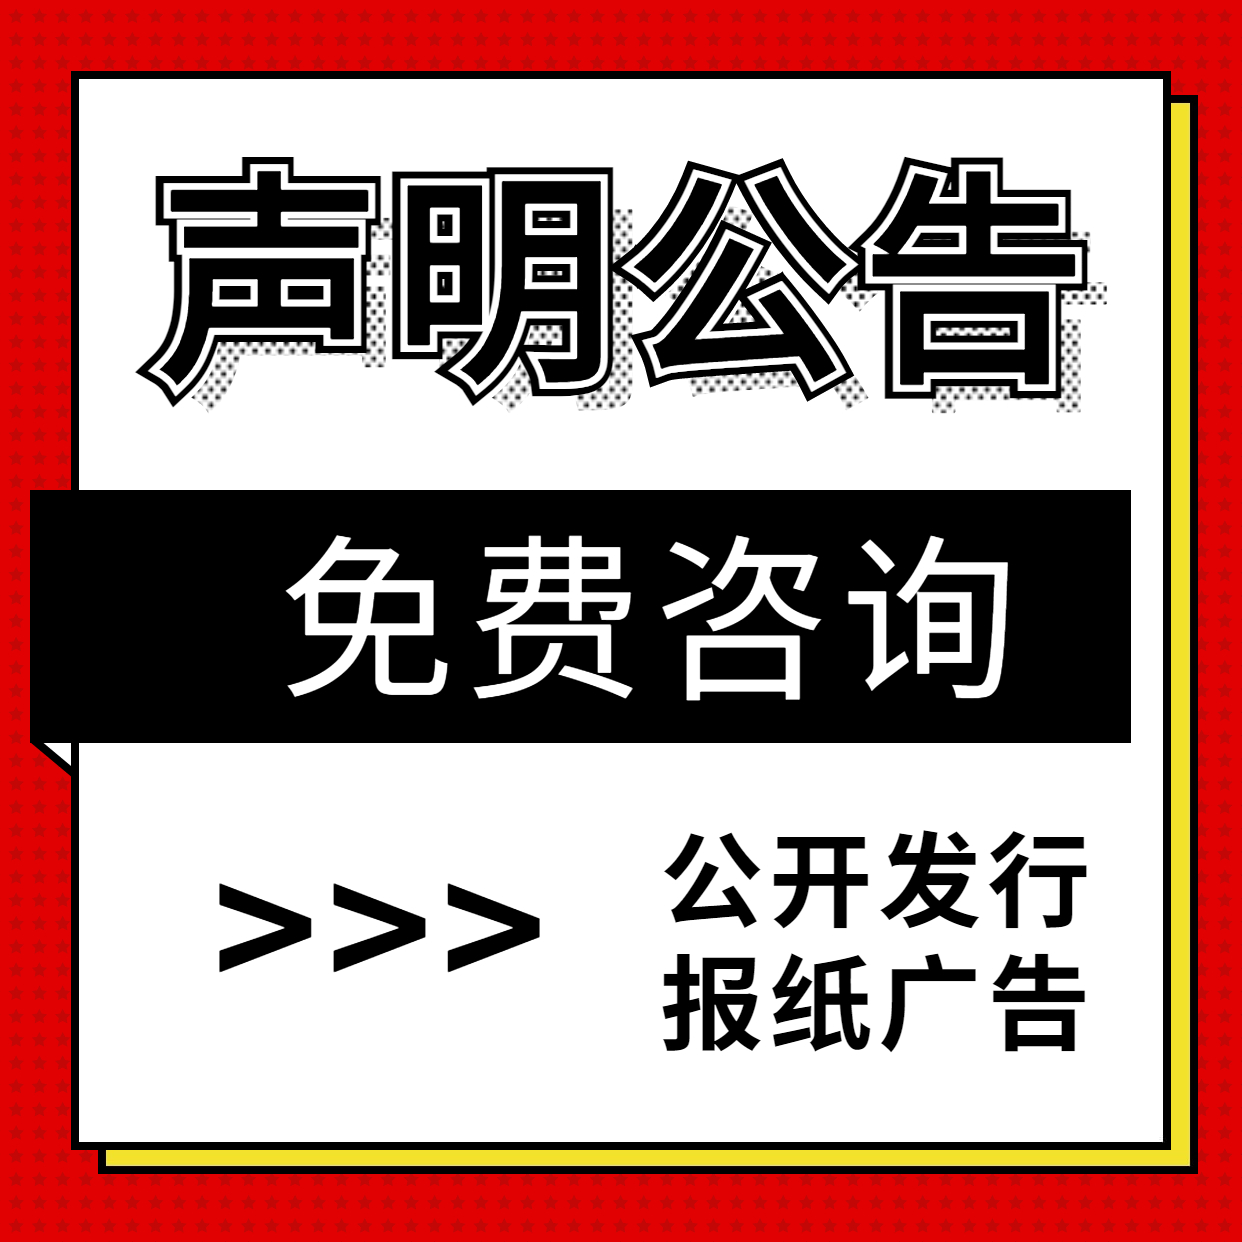 四川工人日报公告登报中心|四川省级报纸